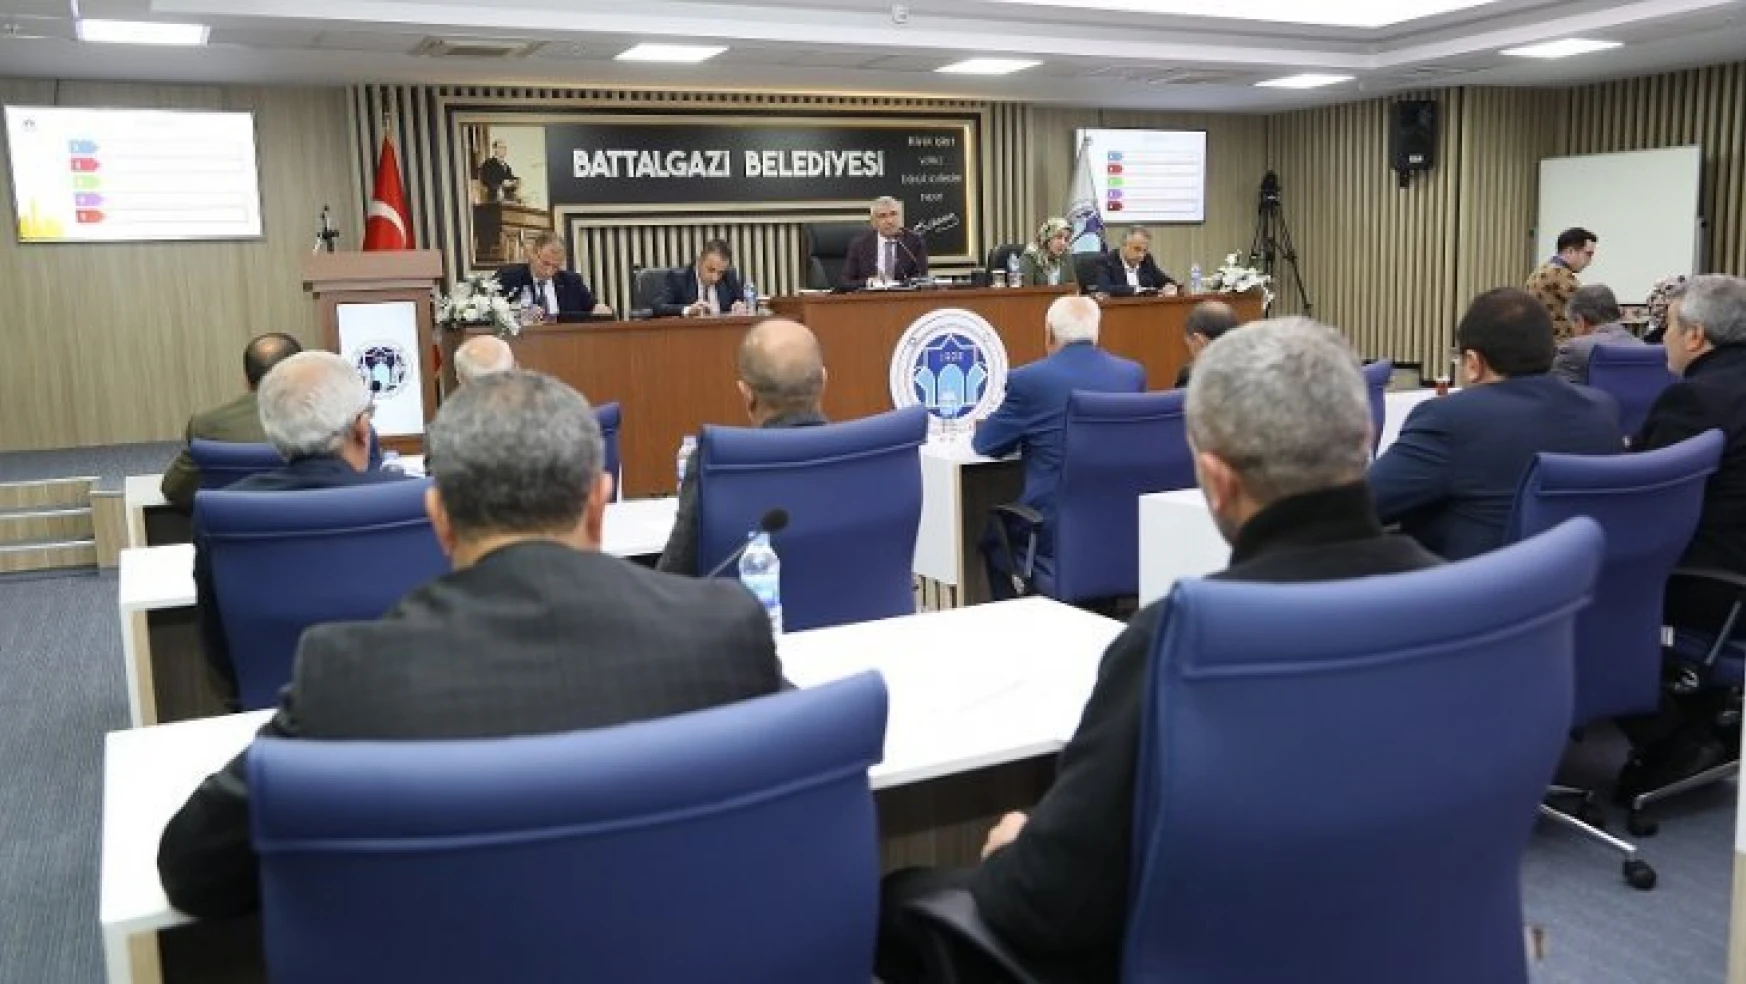 Battalgazi Belediyesi Aralık Ayı Meclis Toplantısı Gerçekleştirildi